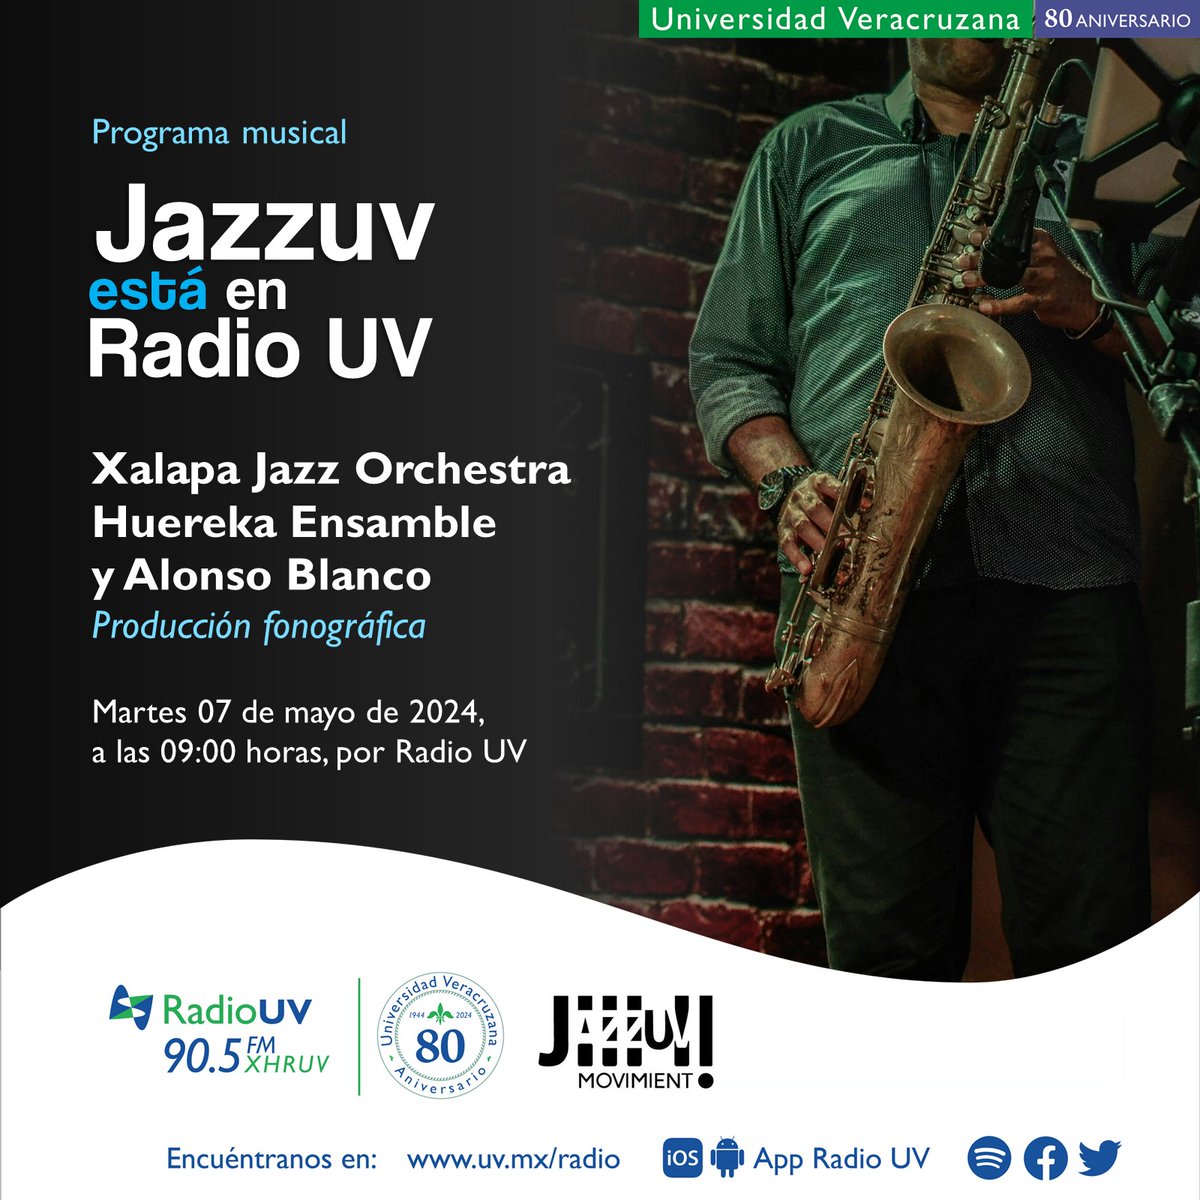 ¡Sigue disfrutando las propuestas musicales de creadoras y creadores #JazzUV, a través de la señal de Radio UV! 🎼 Mañana escucharemos la presentación de Xalapa Jazz Orchestra, Huereka Ensamble y Alonso Blanco. 🎧7 de mayo | 9:00 horas | 90.5 FM